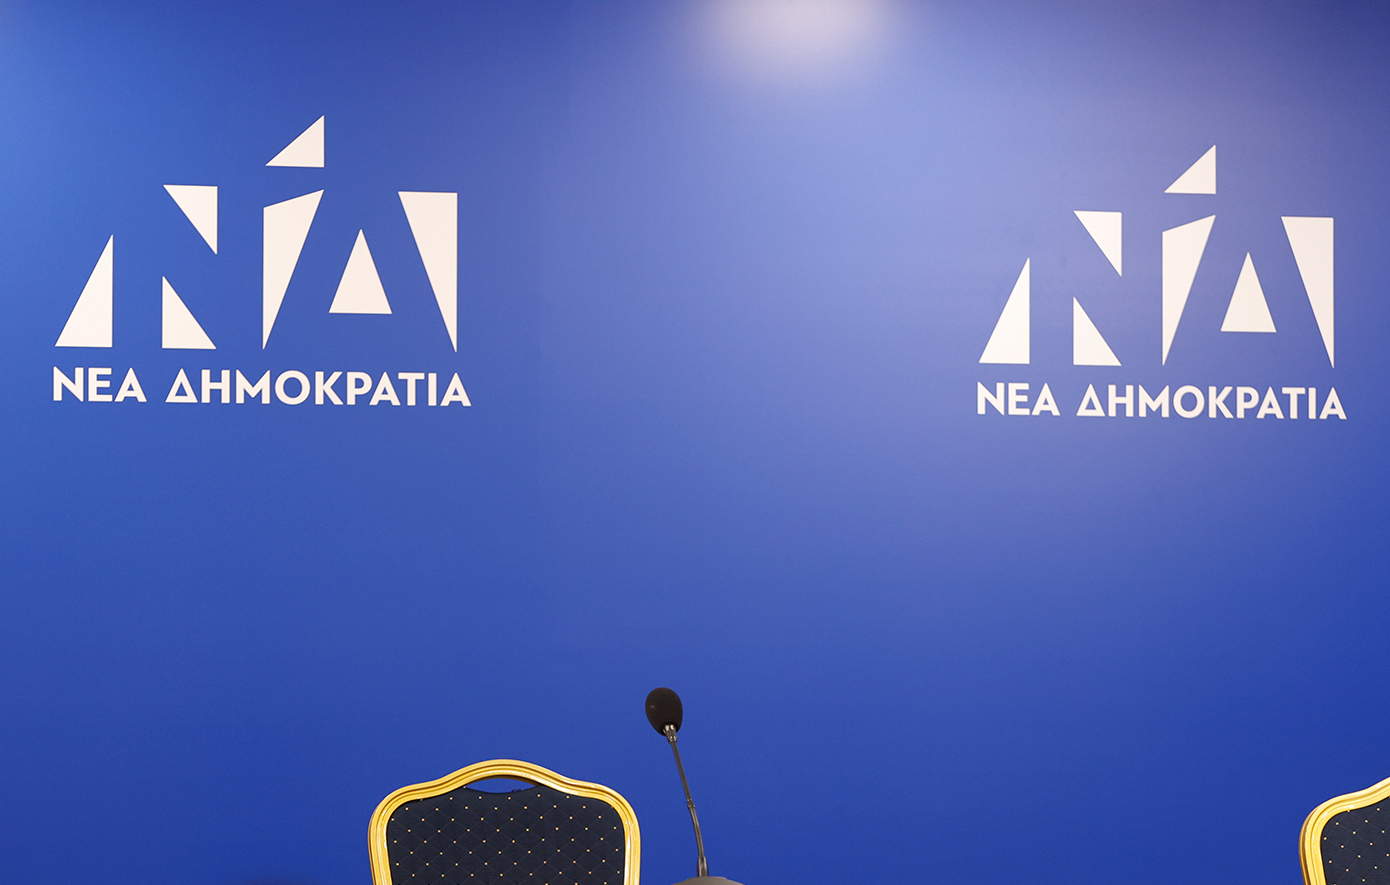 Δύο ακόμα υποψήφιους ευρωβουλευτές ανακοίνωσε η Νέα Δημοκρατία: Νίκος Στέφος και Νουρτζάν Σούλογλου τα νέα ονόματα